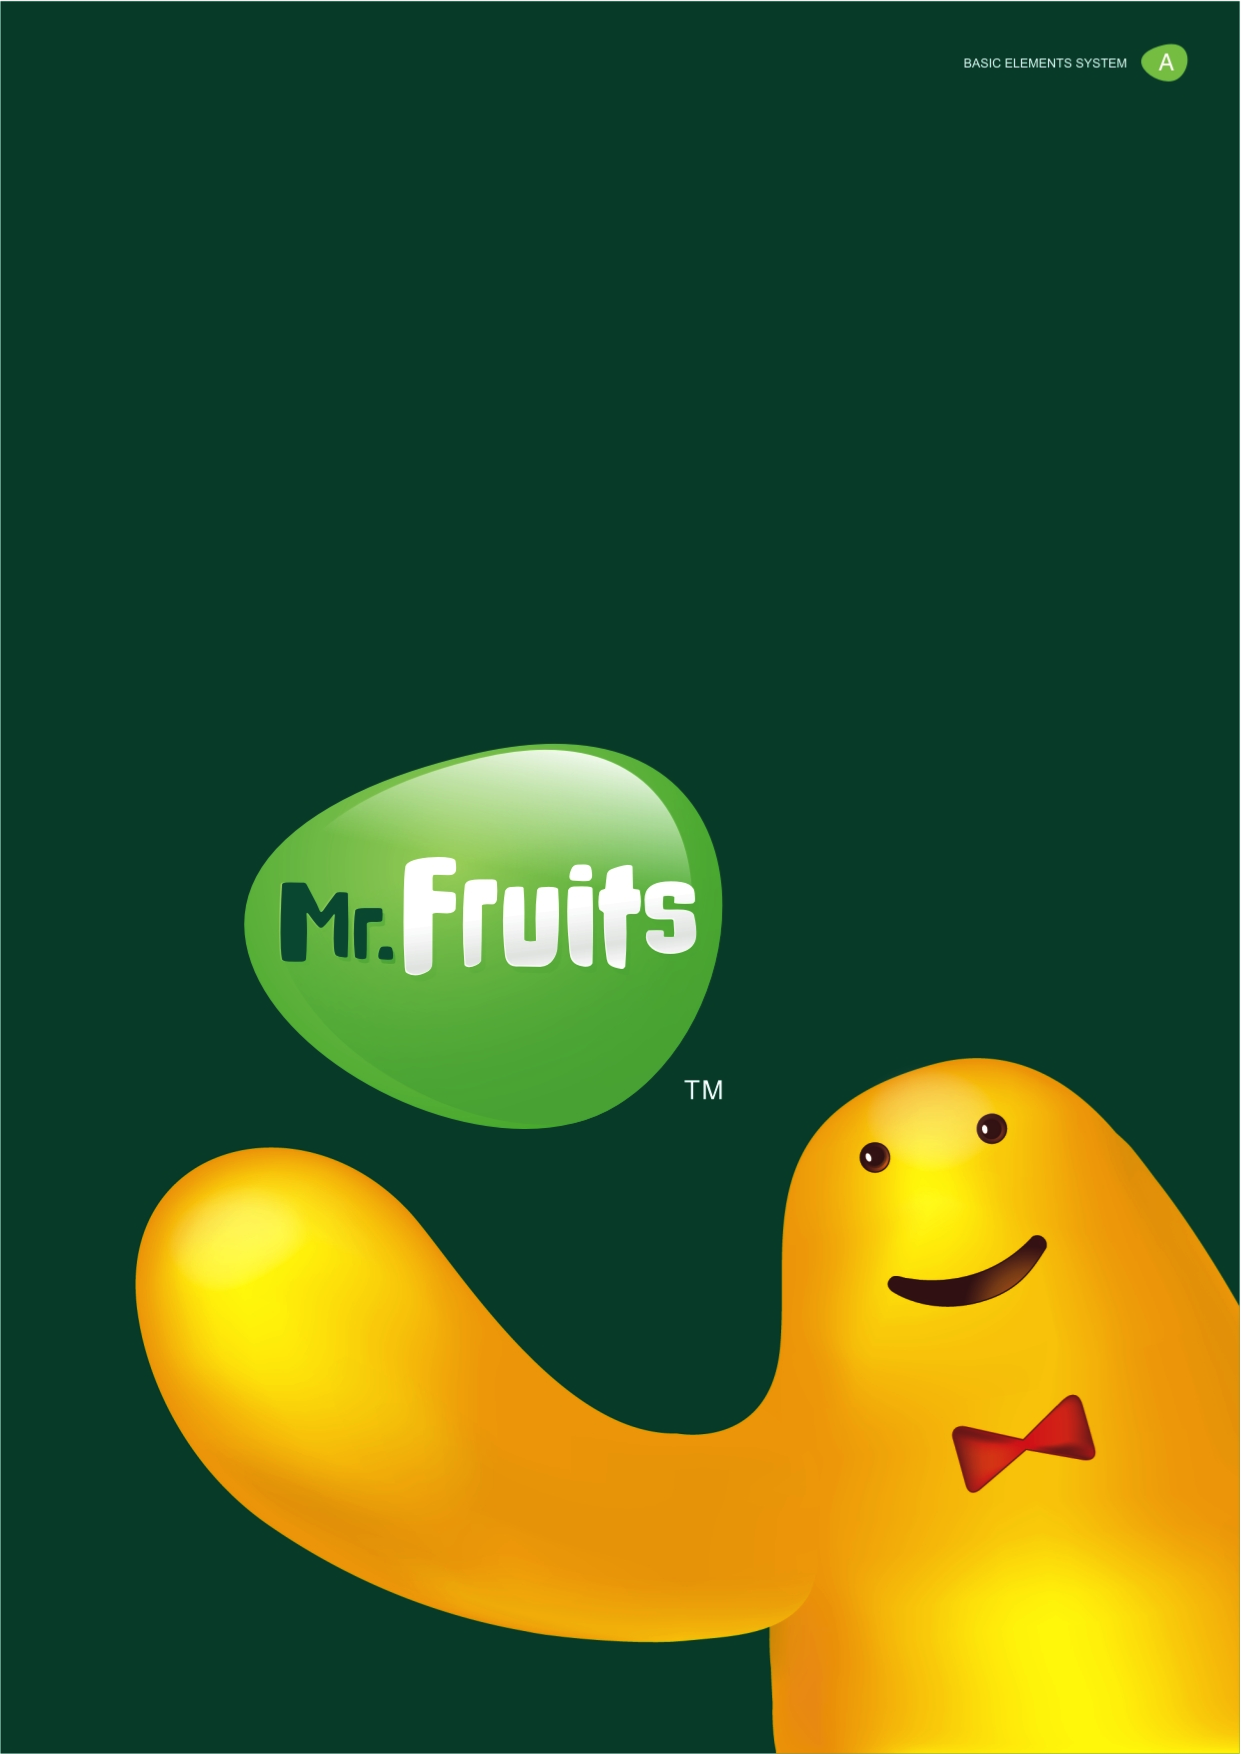 水果先生整体品牌形象由标志和卡通形象